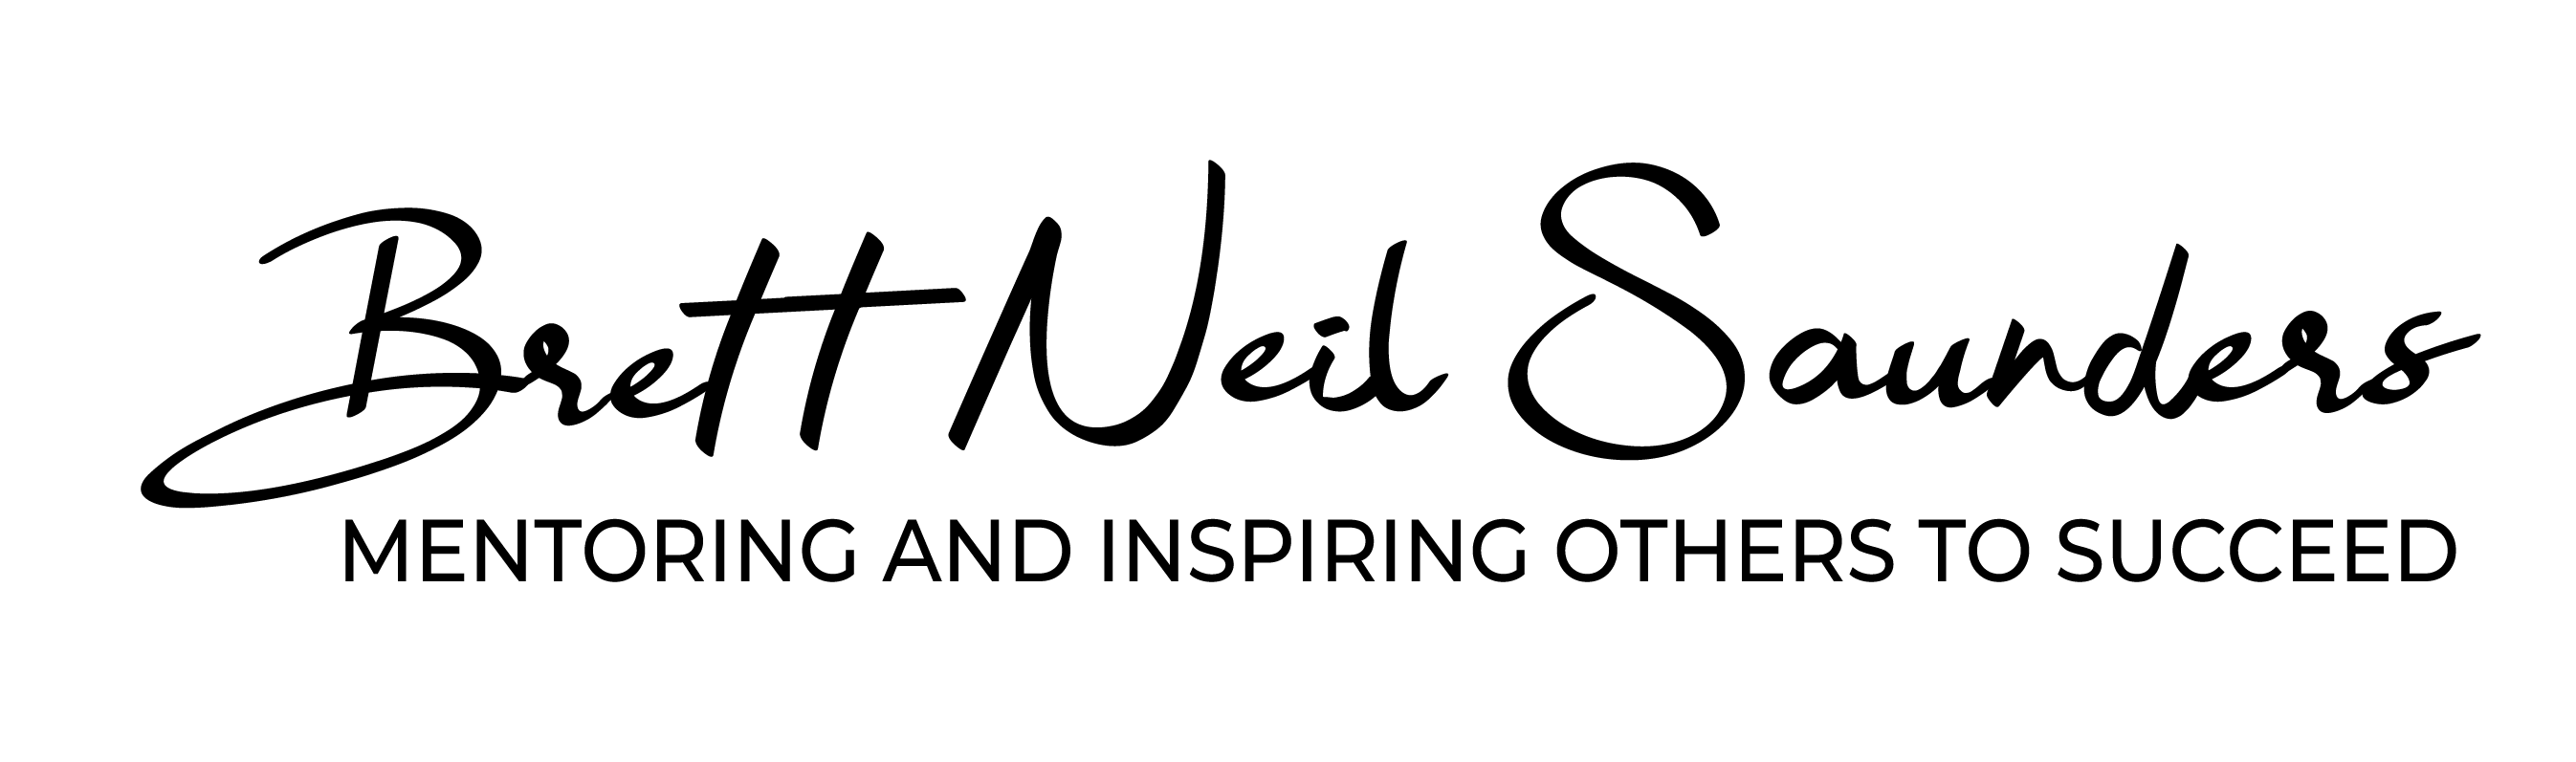 05. Brett Signature logo_with tagline_black on white